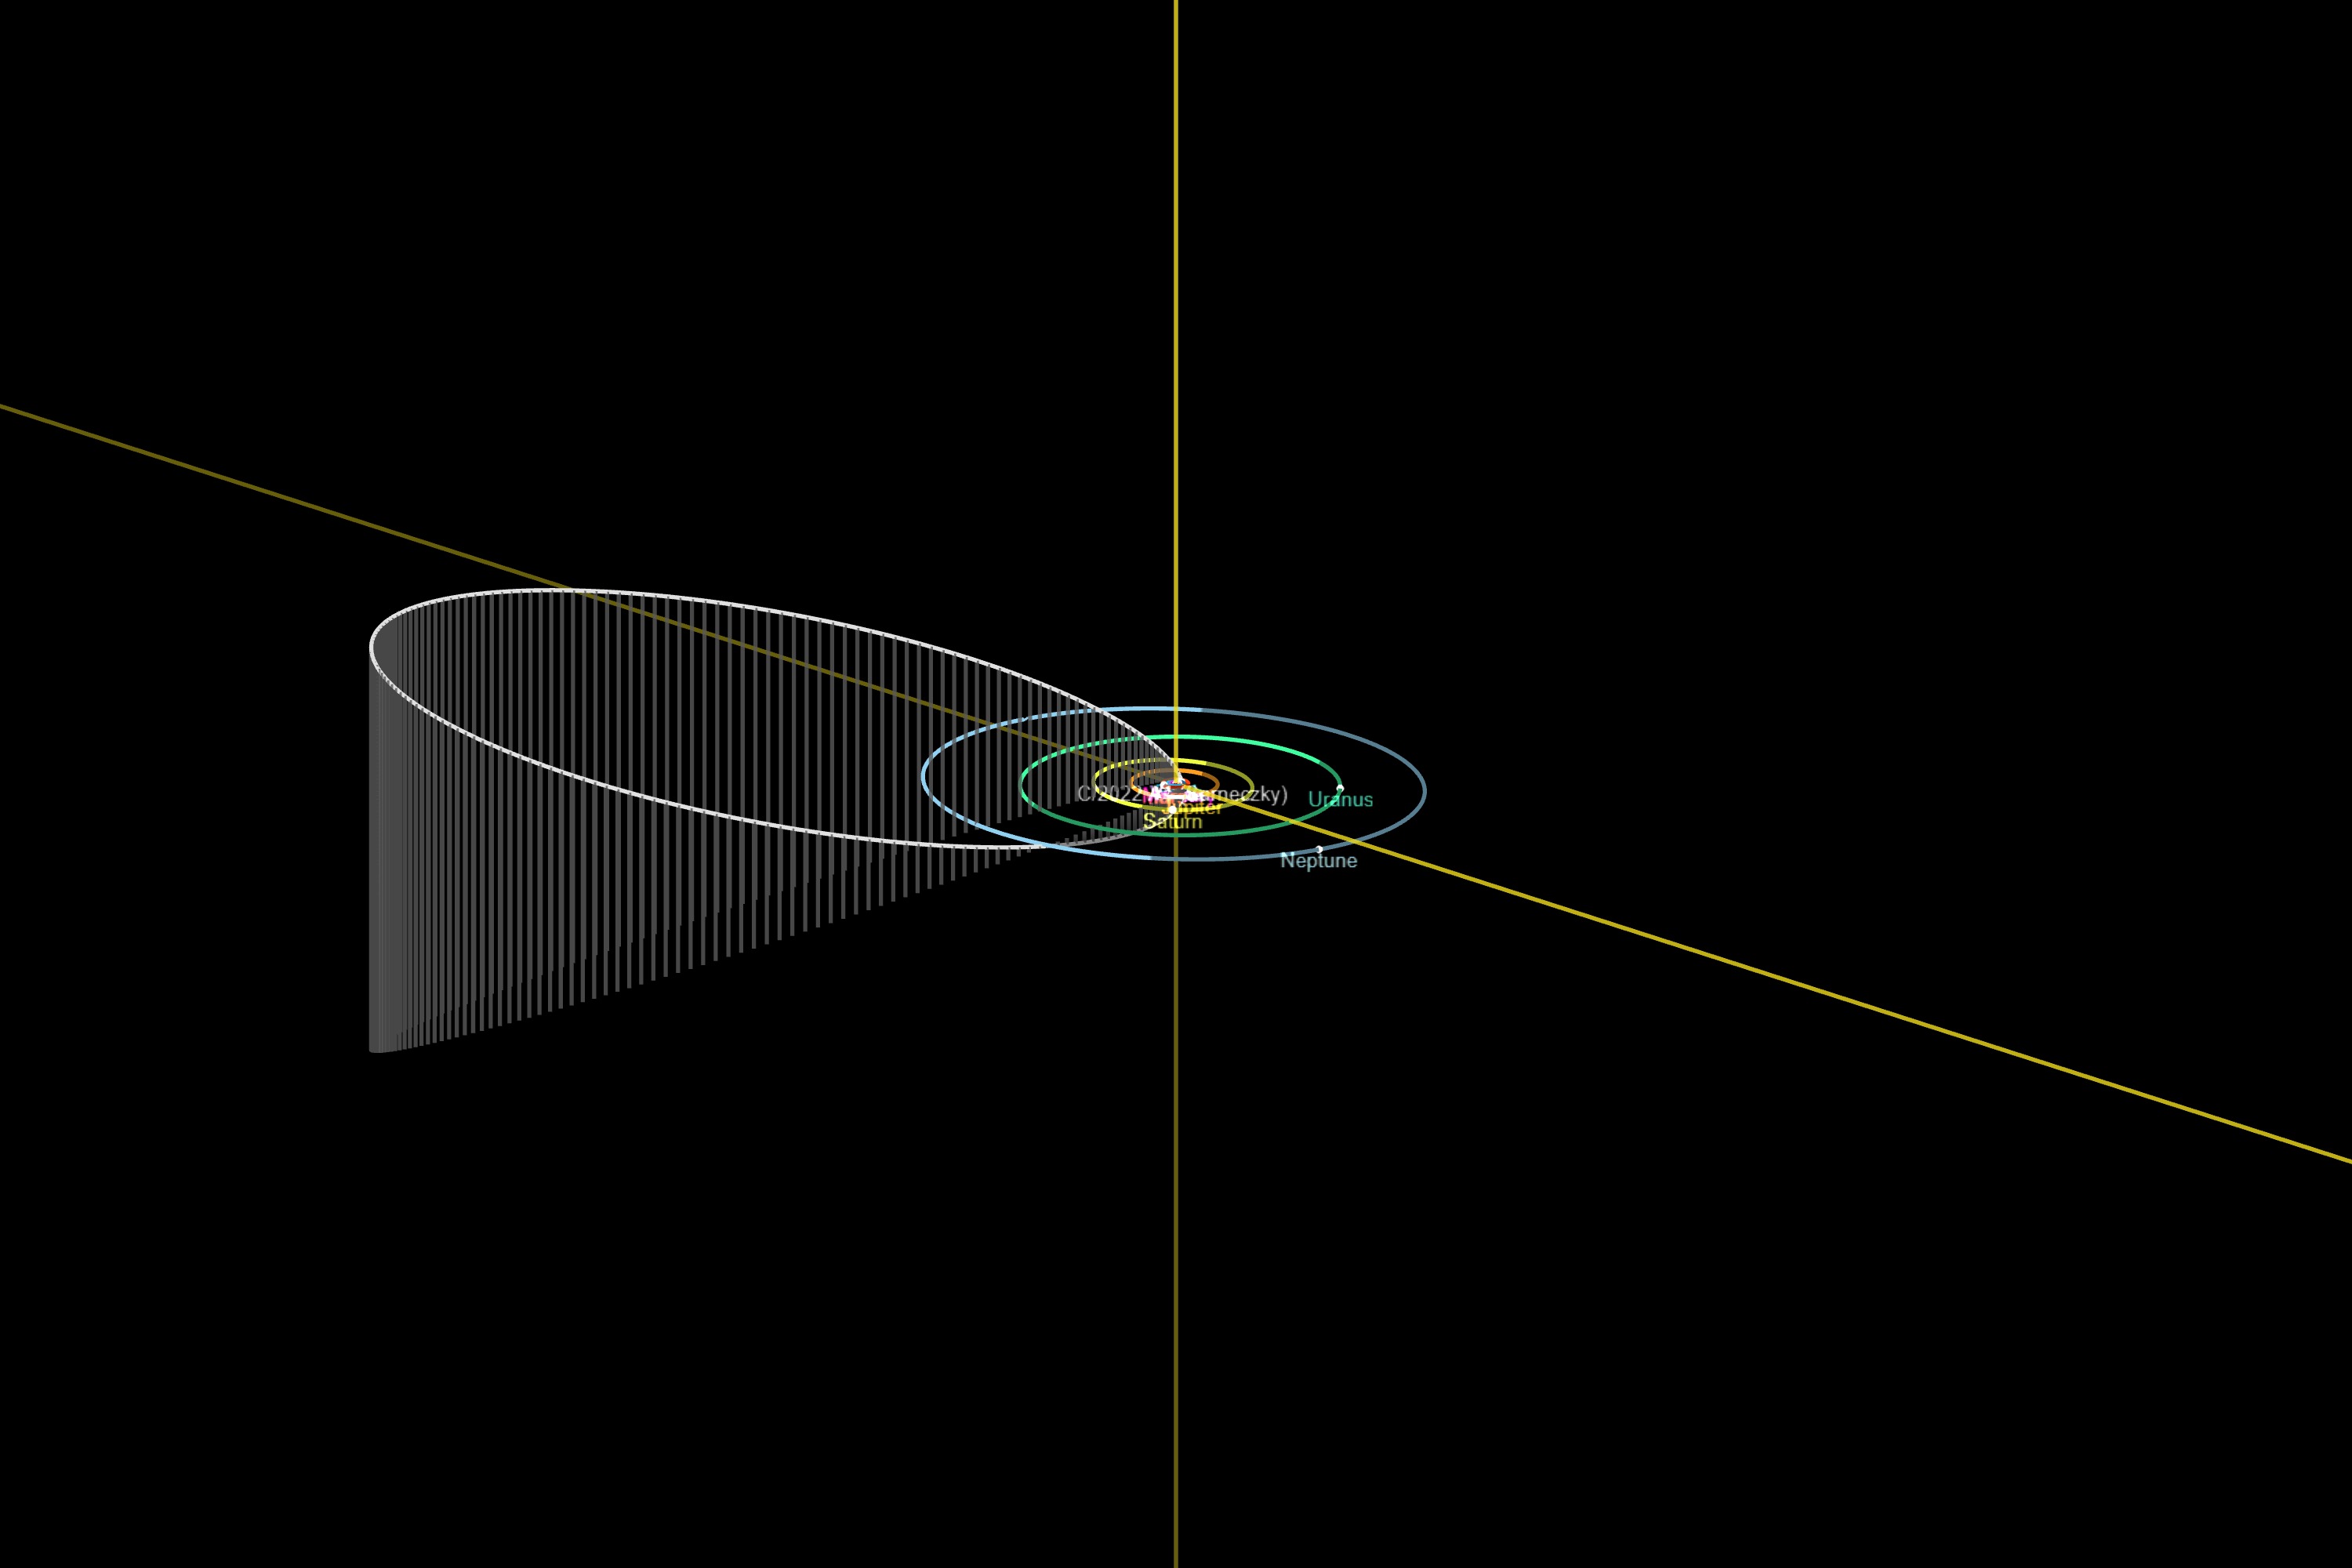 Az üstökös pályája jóval túlnyúlik a Neptunuszon (kékkel jelölve) a január 15-éig beérkezett adatok alapján. Az újabb mérések Sárneczky szerint arra mutatnak, hogy az üstökös ennél is lényegesen messzebbről érkezhetett.